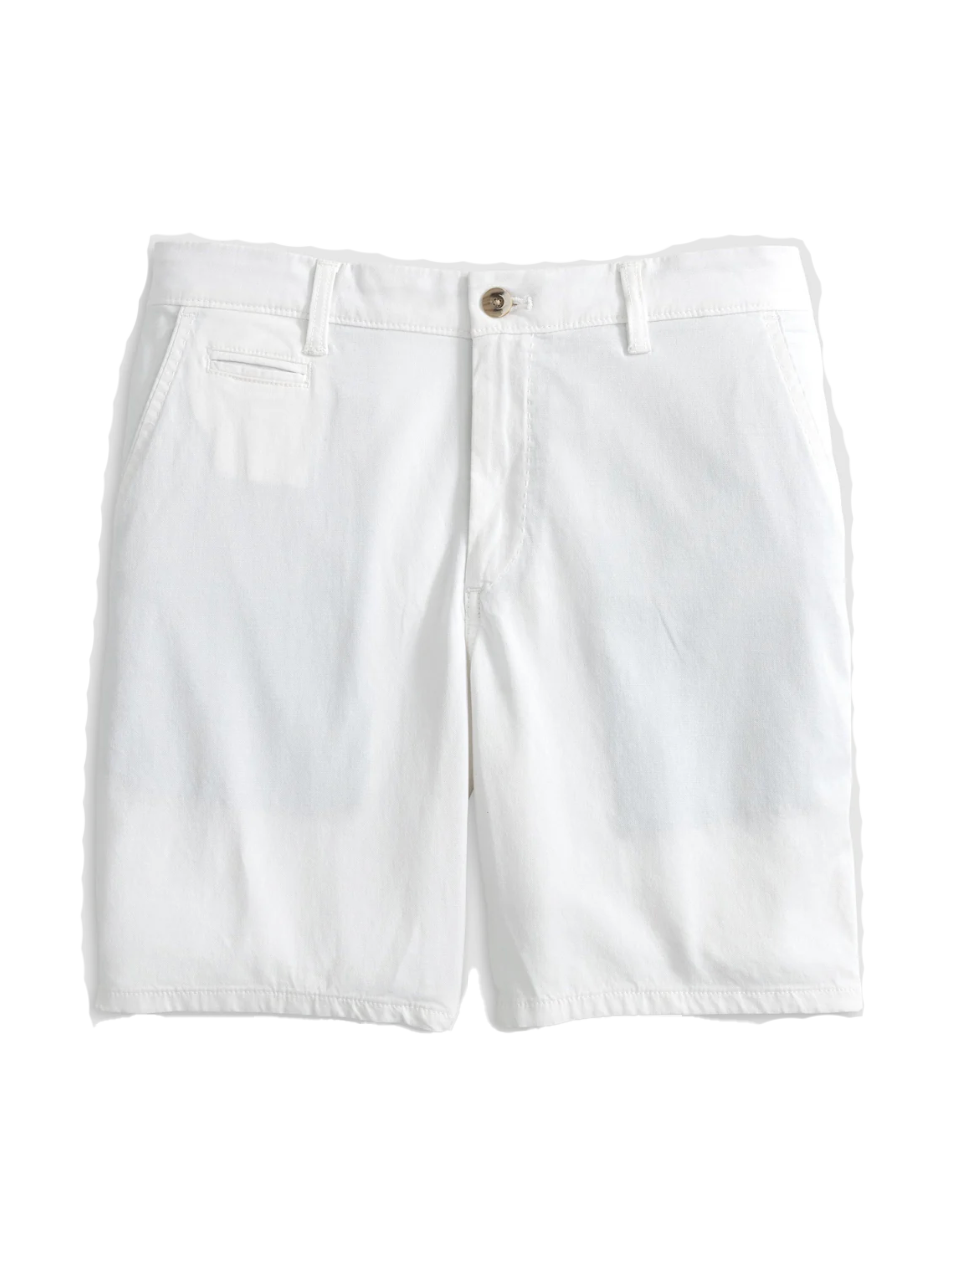 8" Nassau Cotton Blend Shorts White